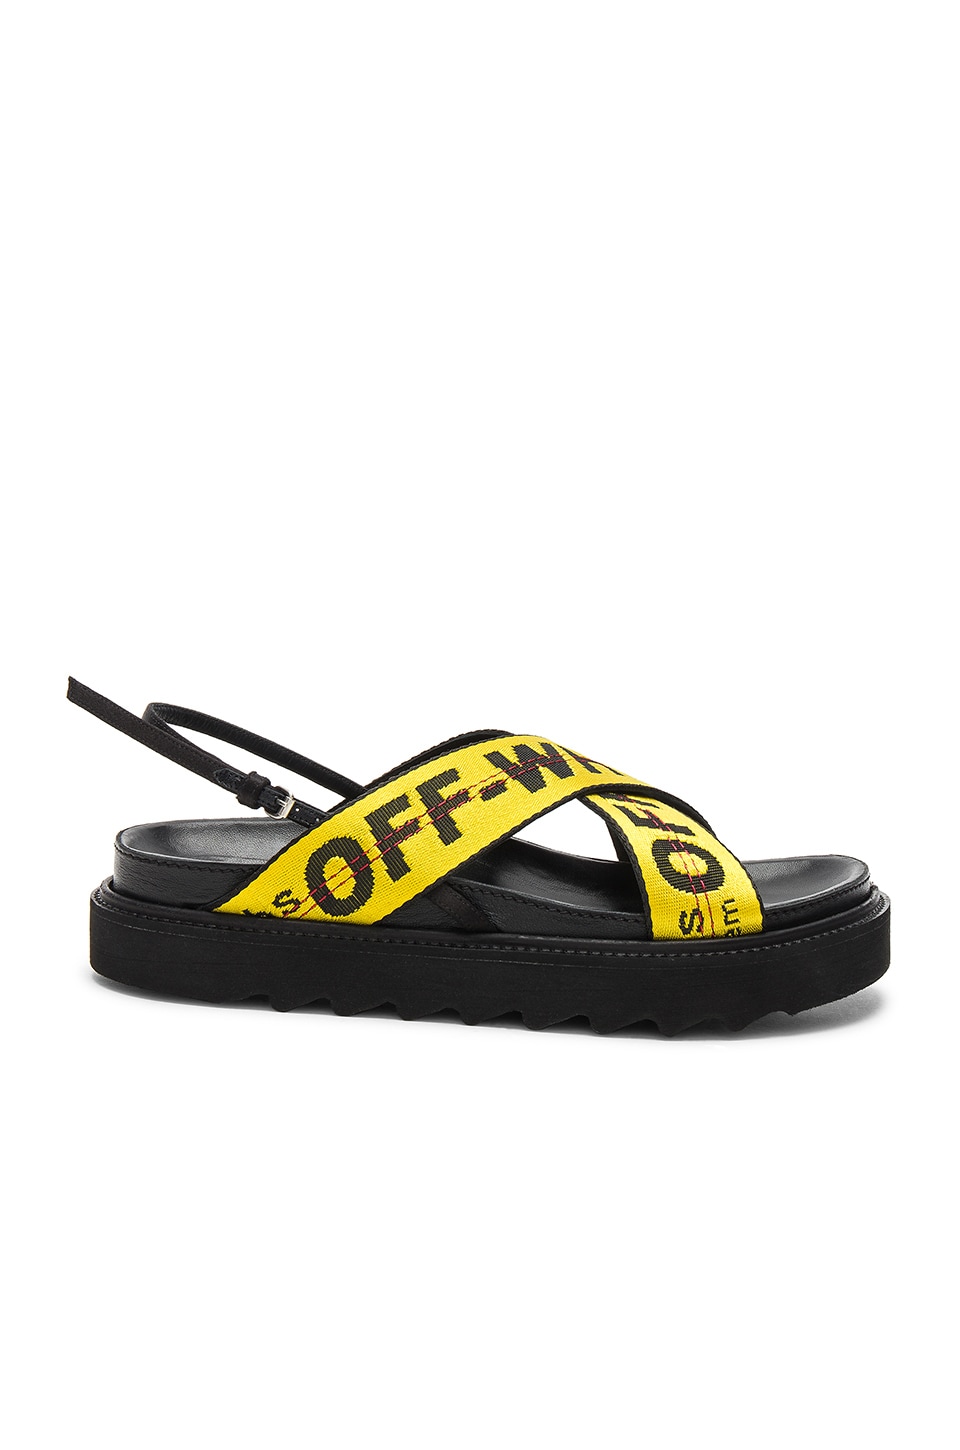 OFF-WHITE Industrial Belt Sandal in Black & Yellow | REVOLVE